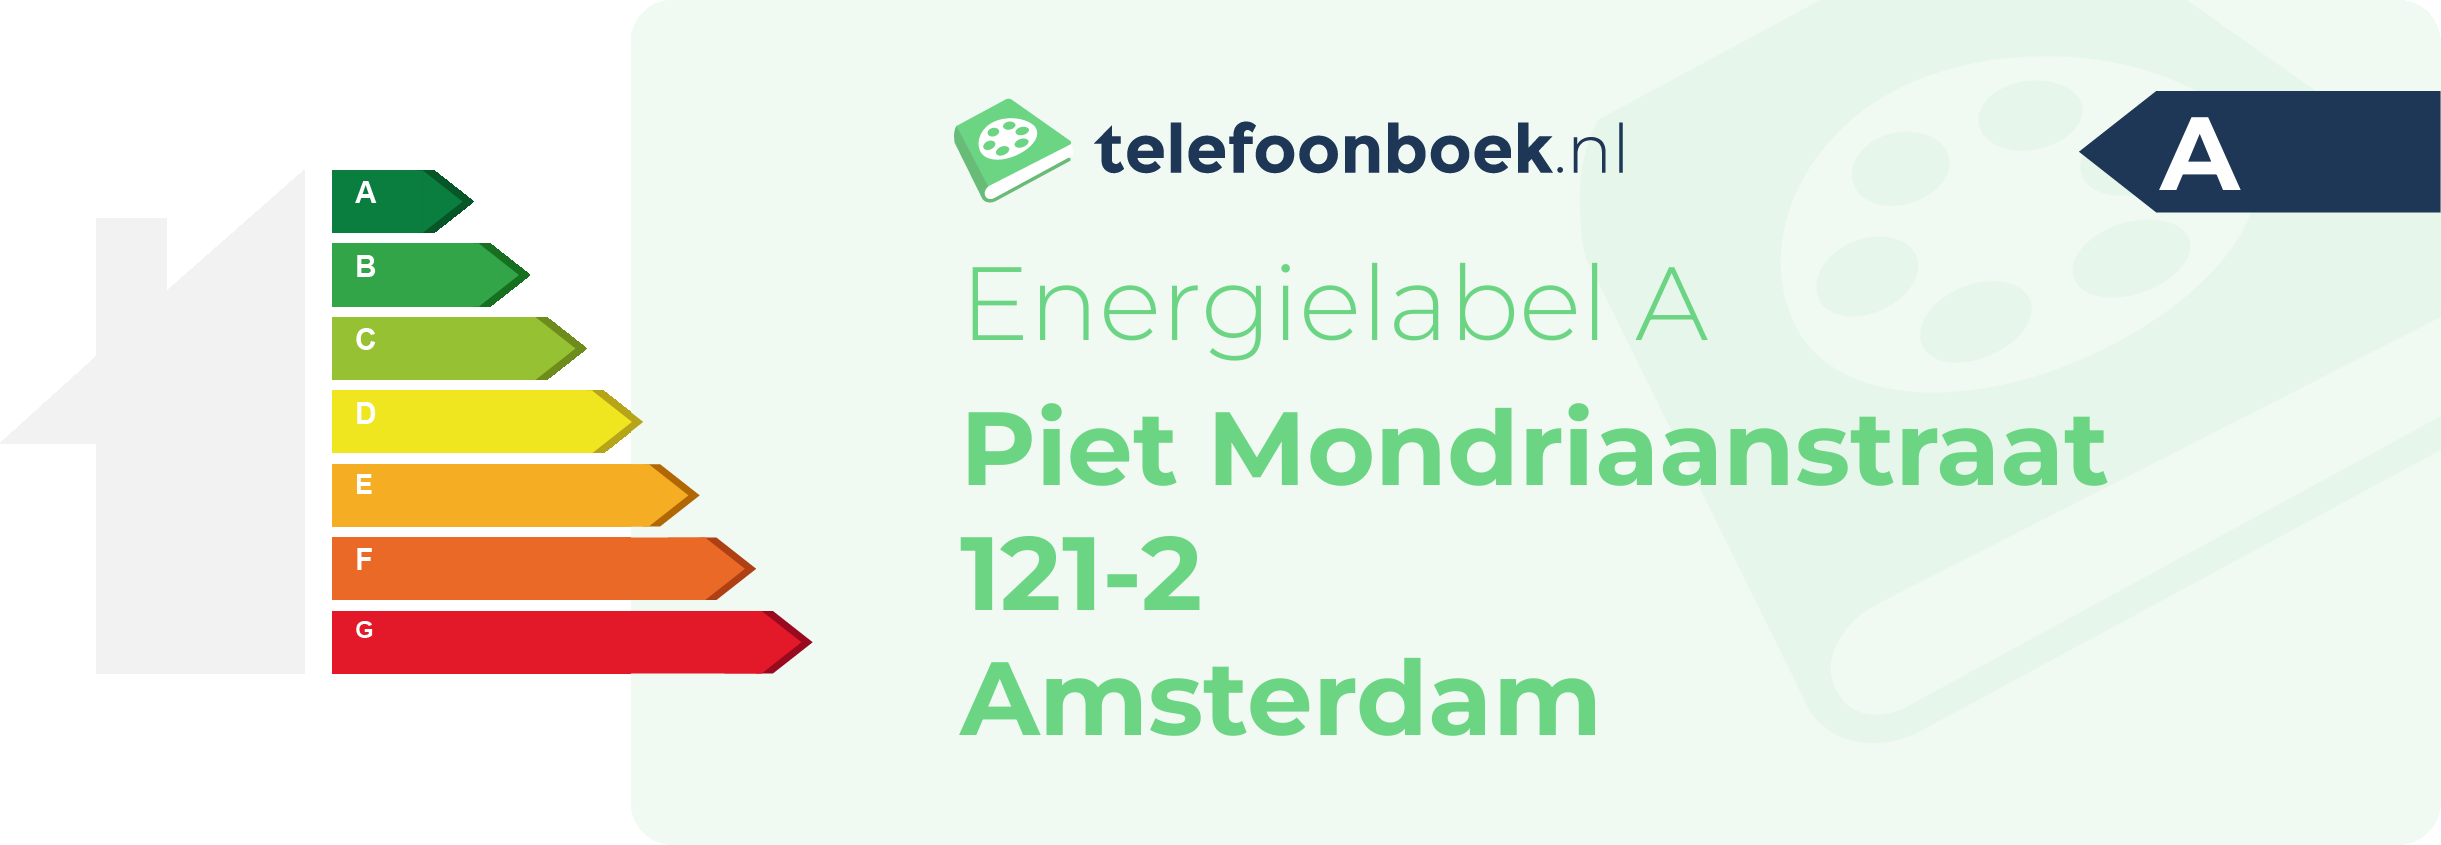 Energielabel Piet Mondriaanstraat 121-2 Amsterdam